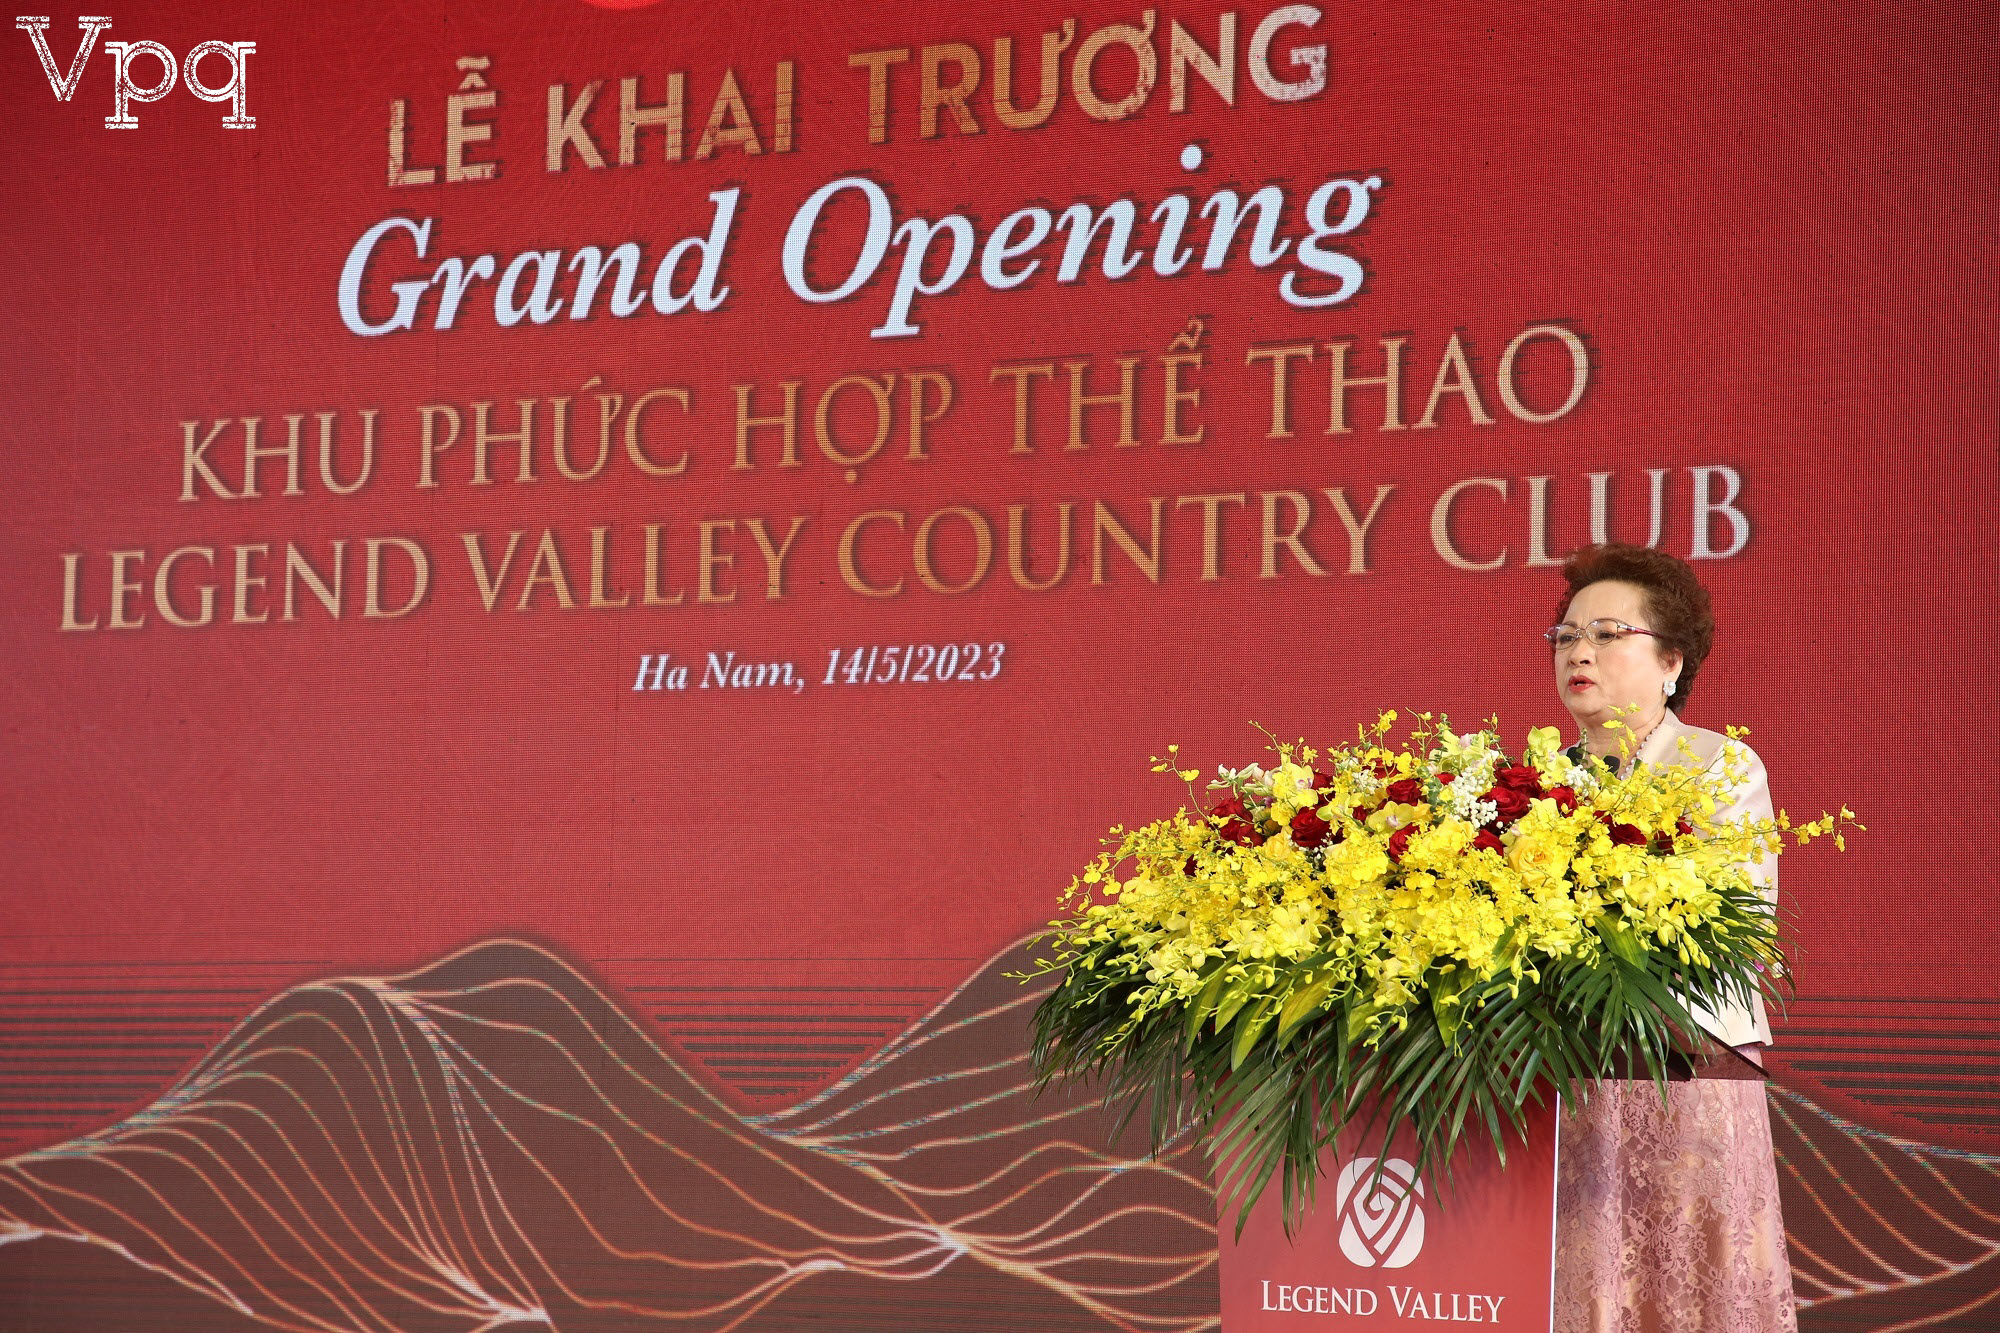 Bà Nguyễn Thị Nga, đại diện chủ đầu tư, phát biểu tại sự kiện